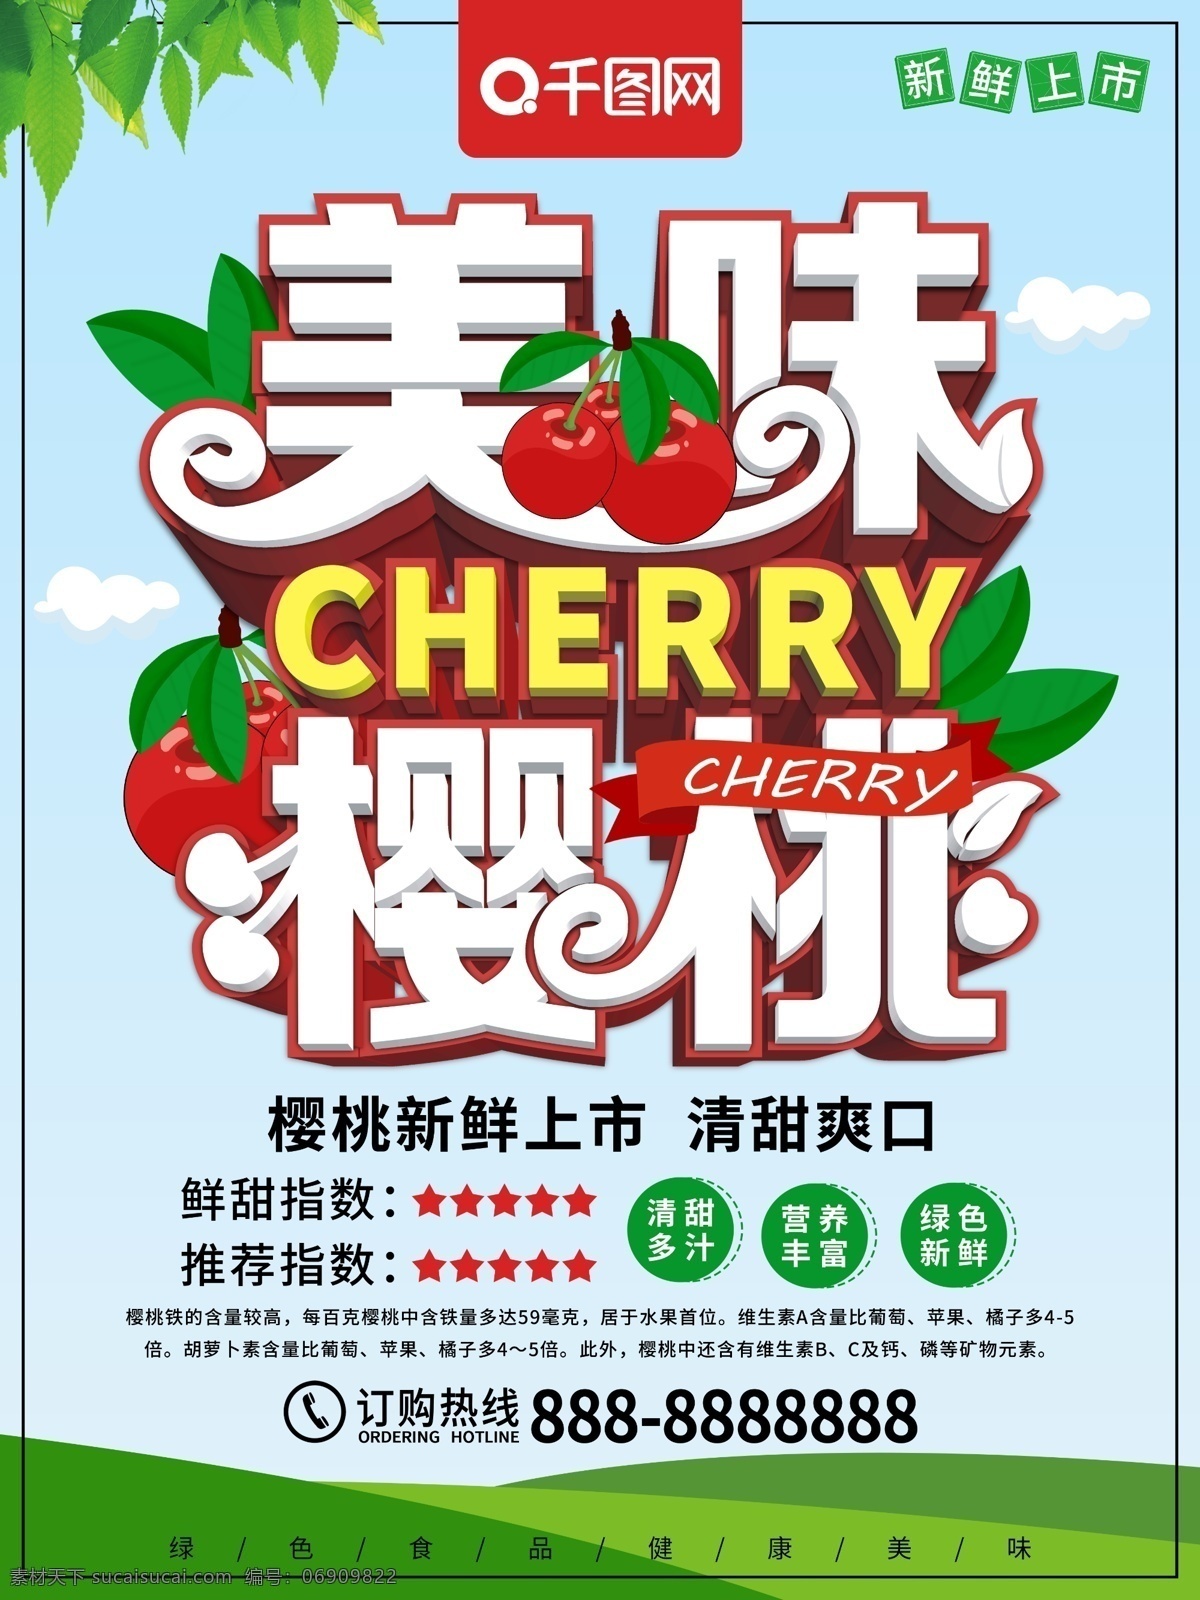 原创 清新 美味 樱桃 水果 食物 促销 海报 美味樱桃 美食 水果促销 樱桃海报 水果海报 食物海报